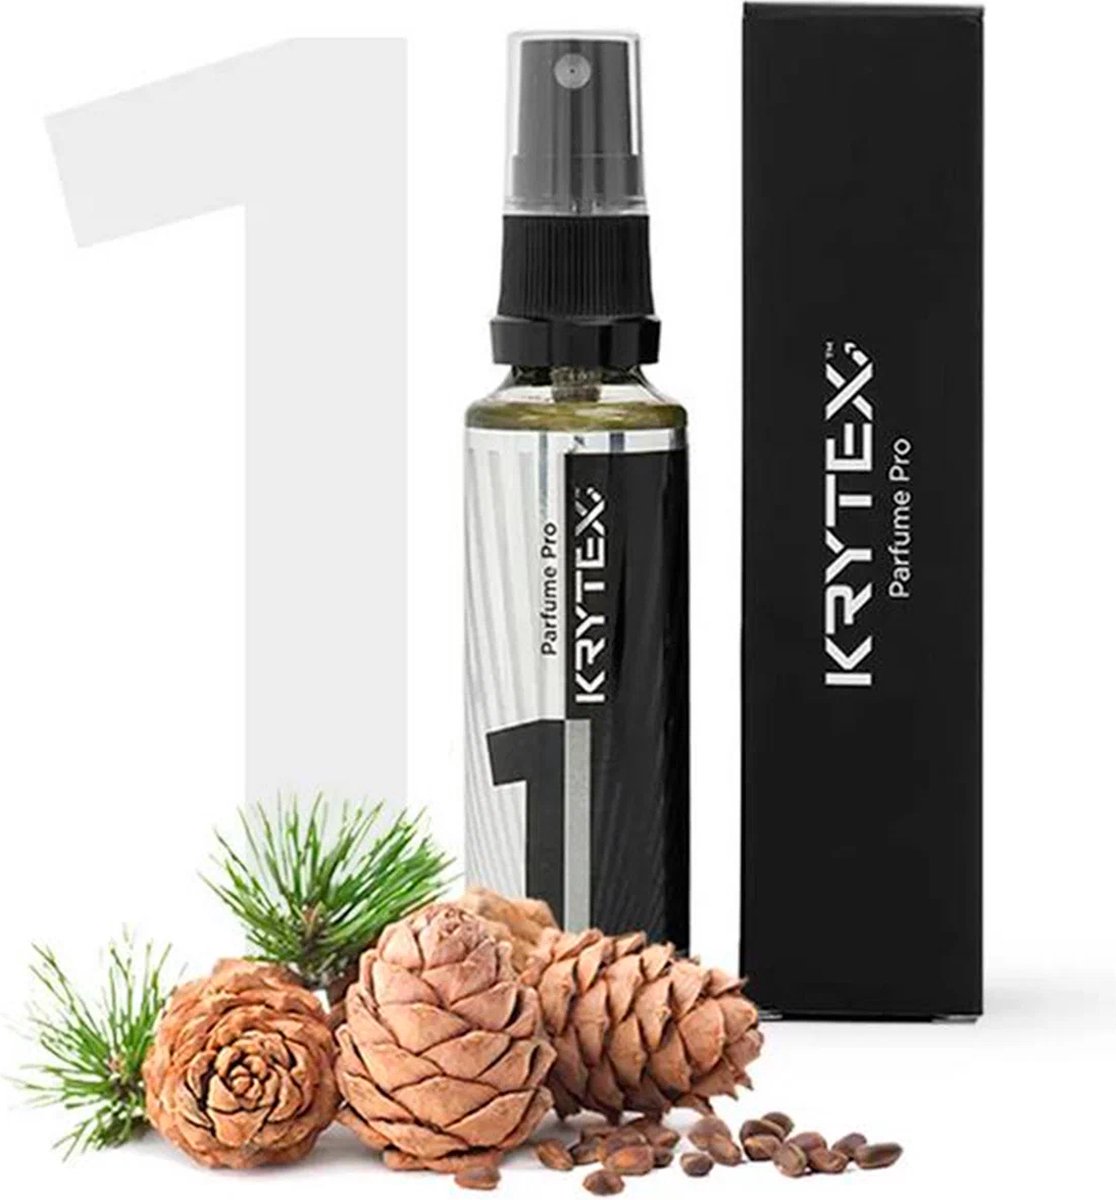 KRYTEX™ Nr 1 PRO auto luchtverfrisser auto parfum autoparfum spray autogeurtje Luxe parfum auto geurverfrisser perfume - auto luchtverfrisser - natuurlijke ingrediënten - ECHTE parfum